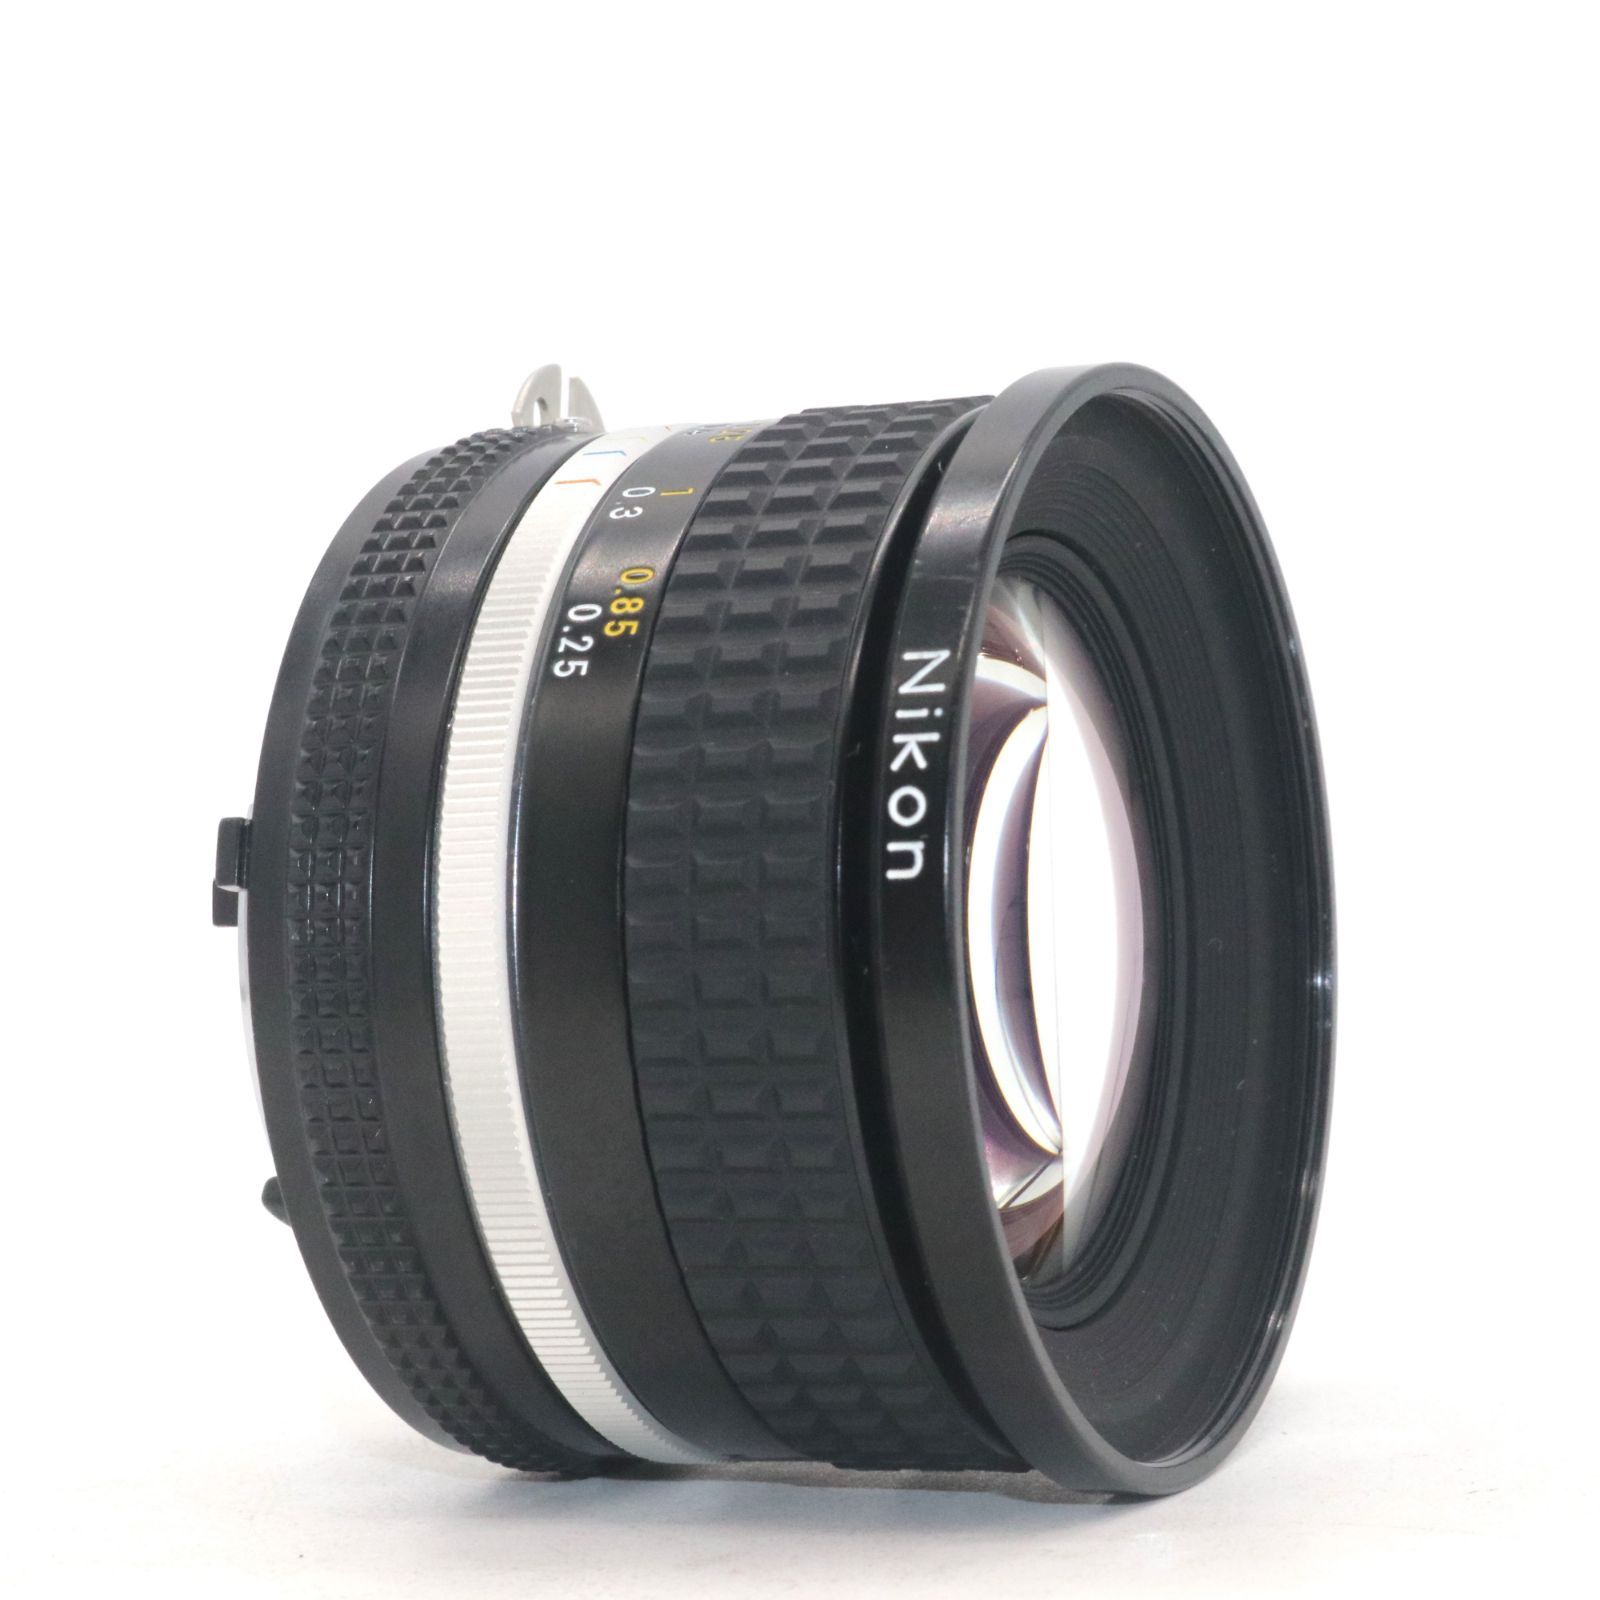 美品 箱付き Nikon Nikkor Ai-S Ais 20mm f/2.8 広角 単焦点